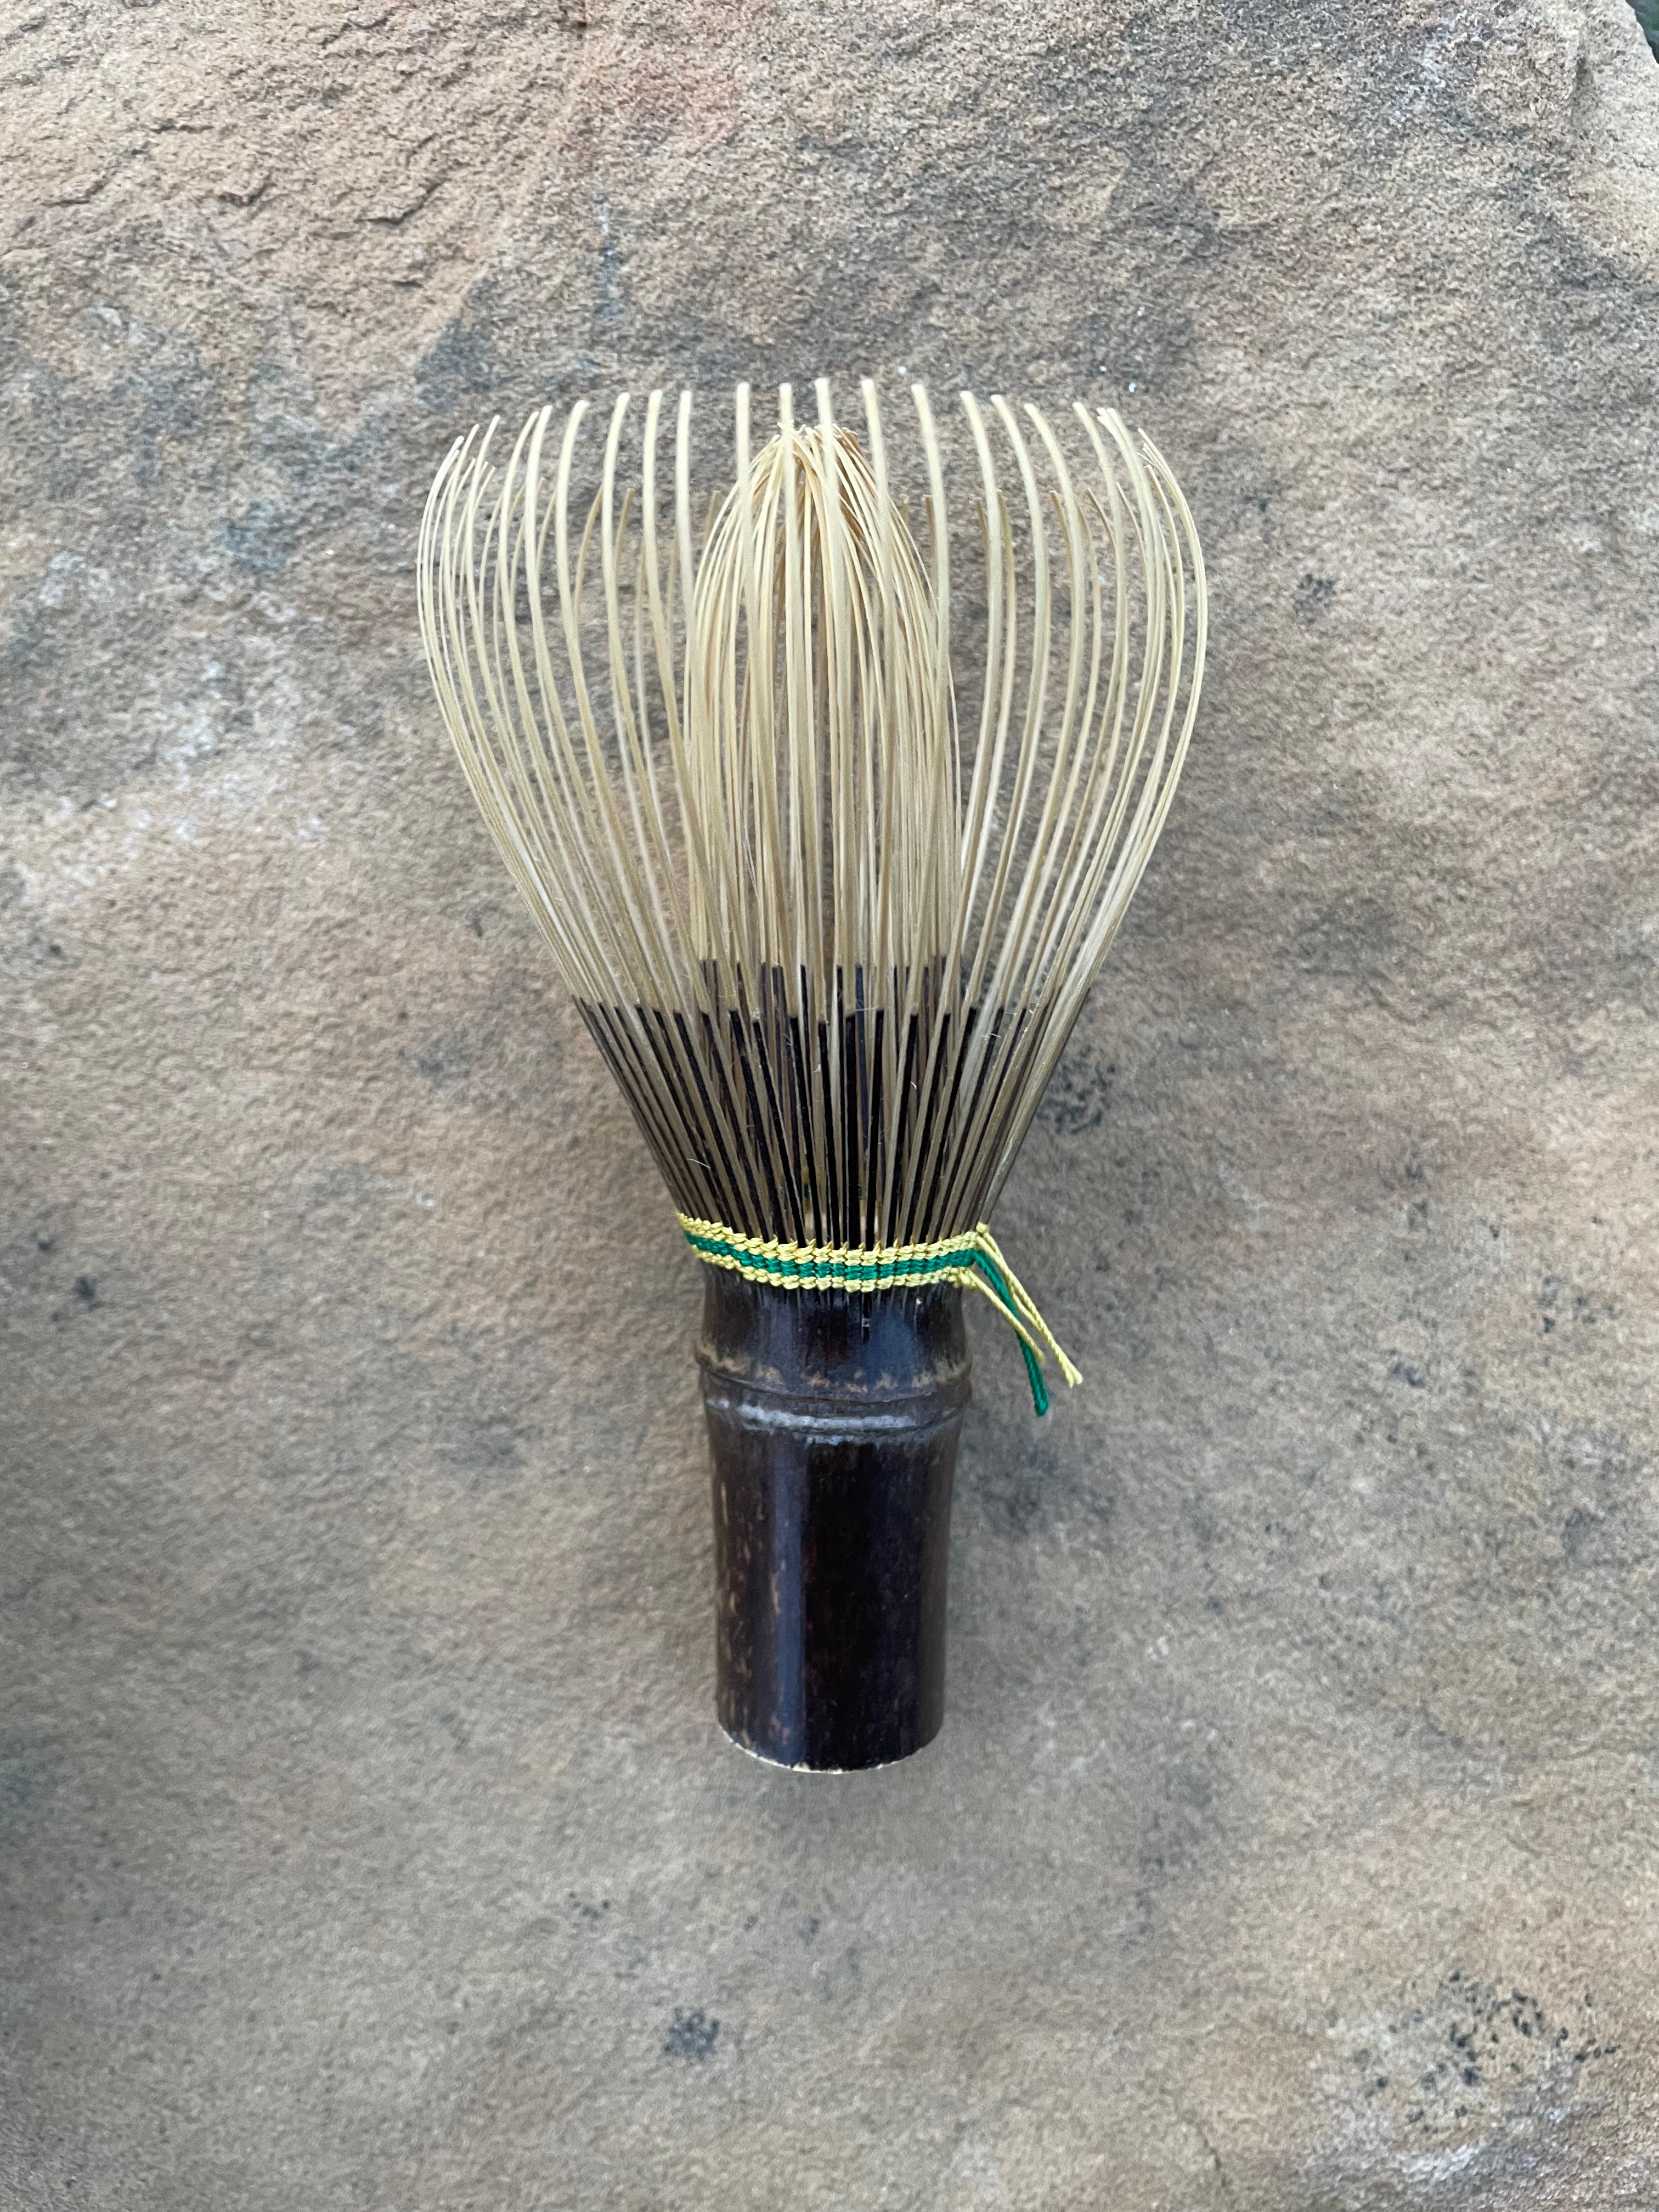 Black Bamboo Whisk (Chasen) Handmade in Japan